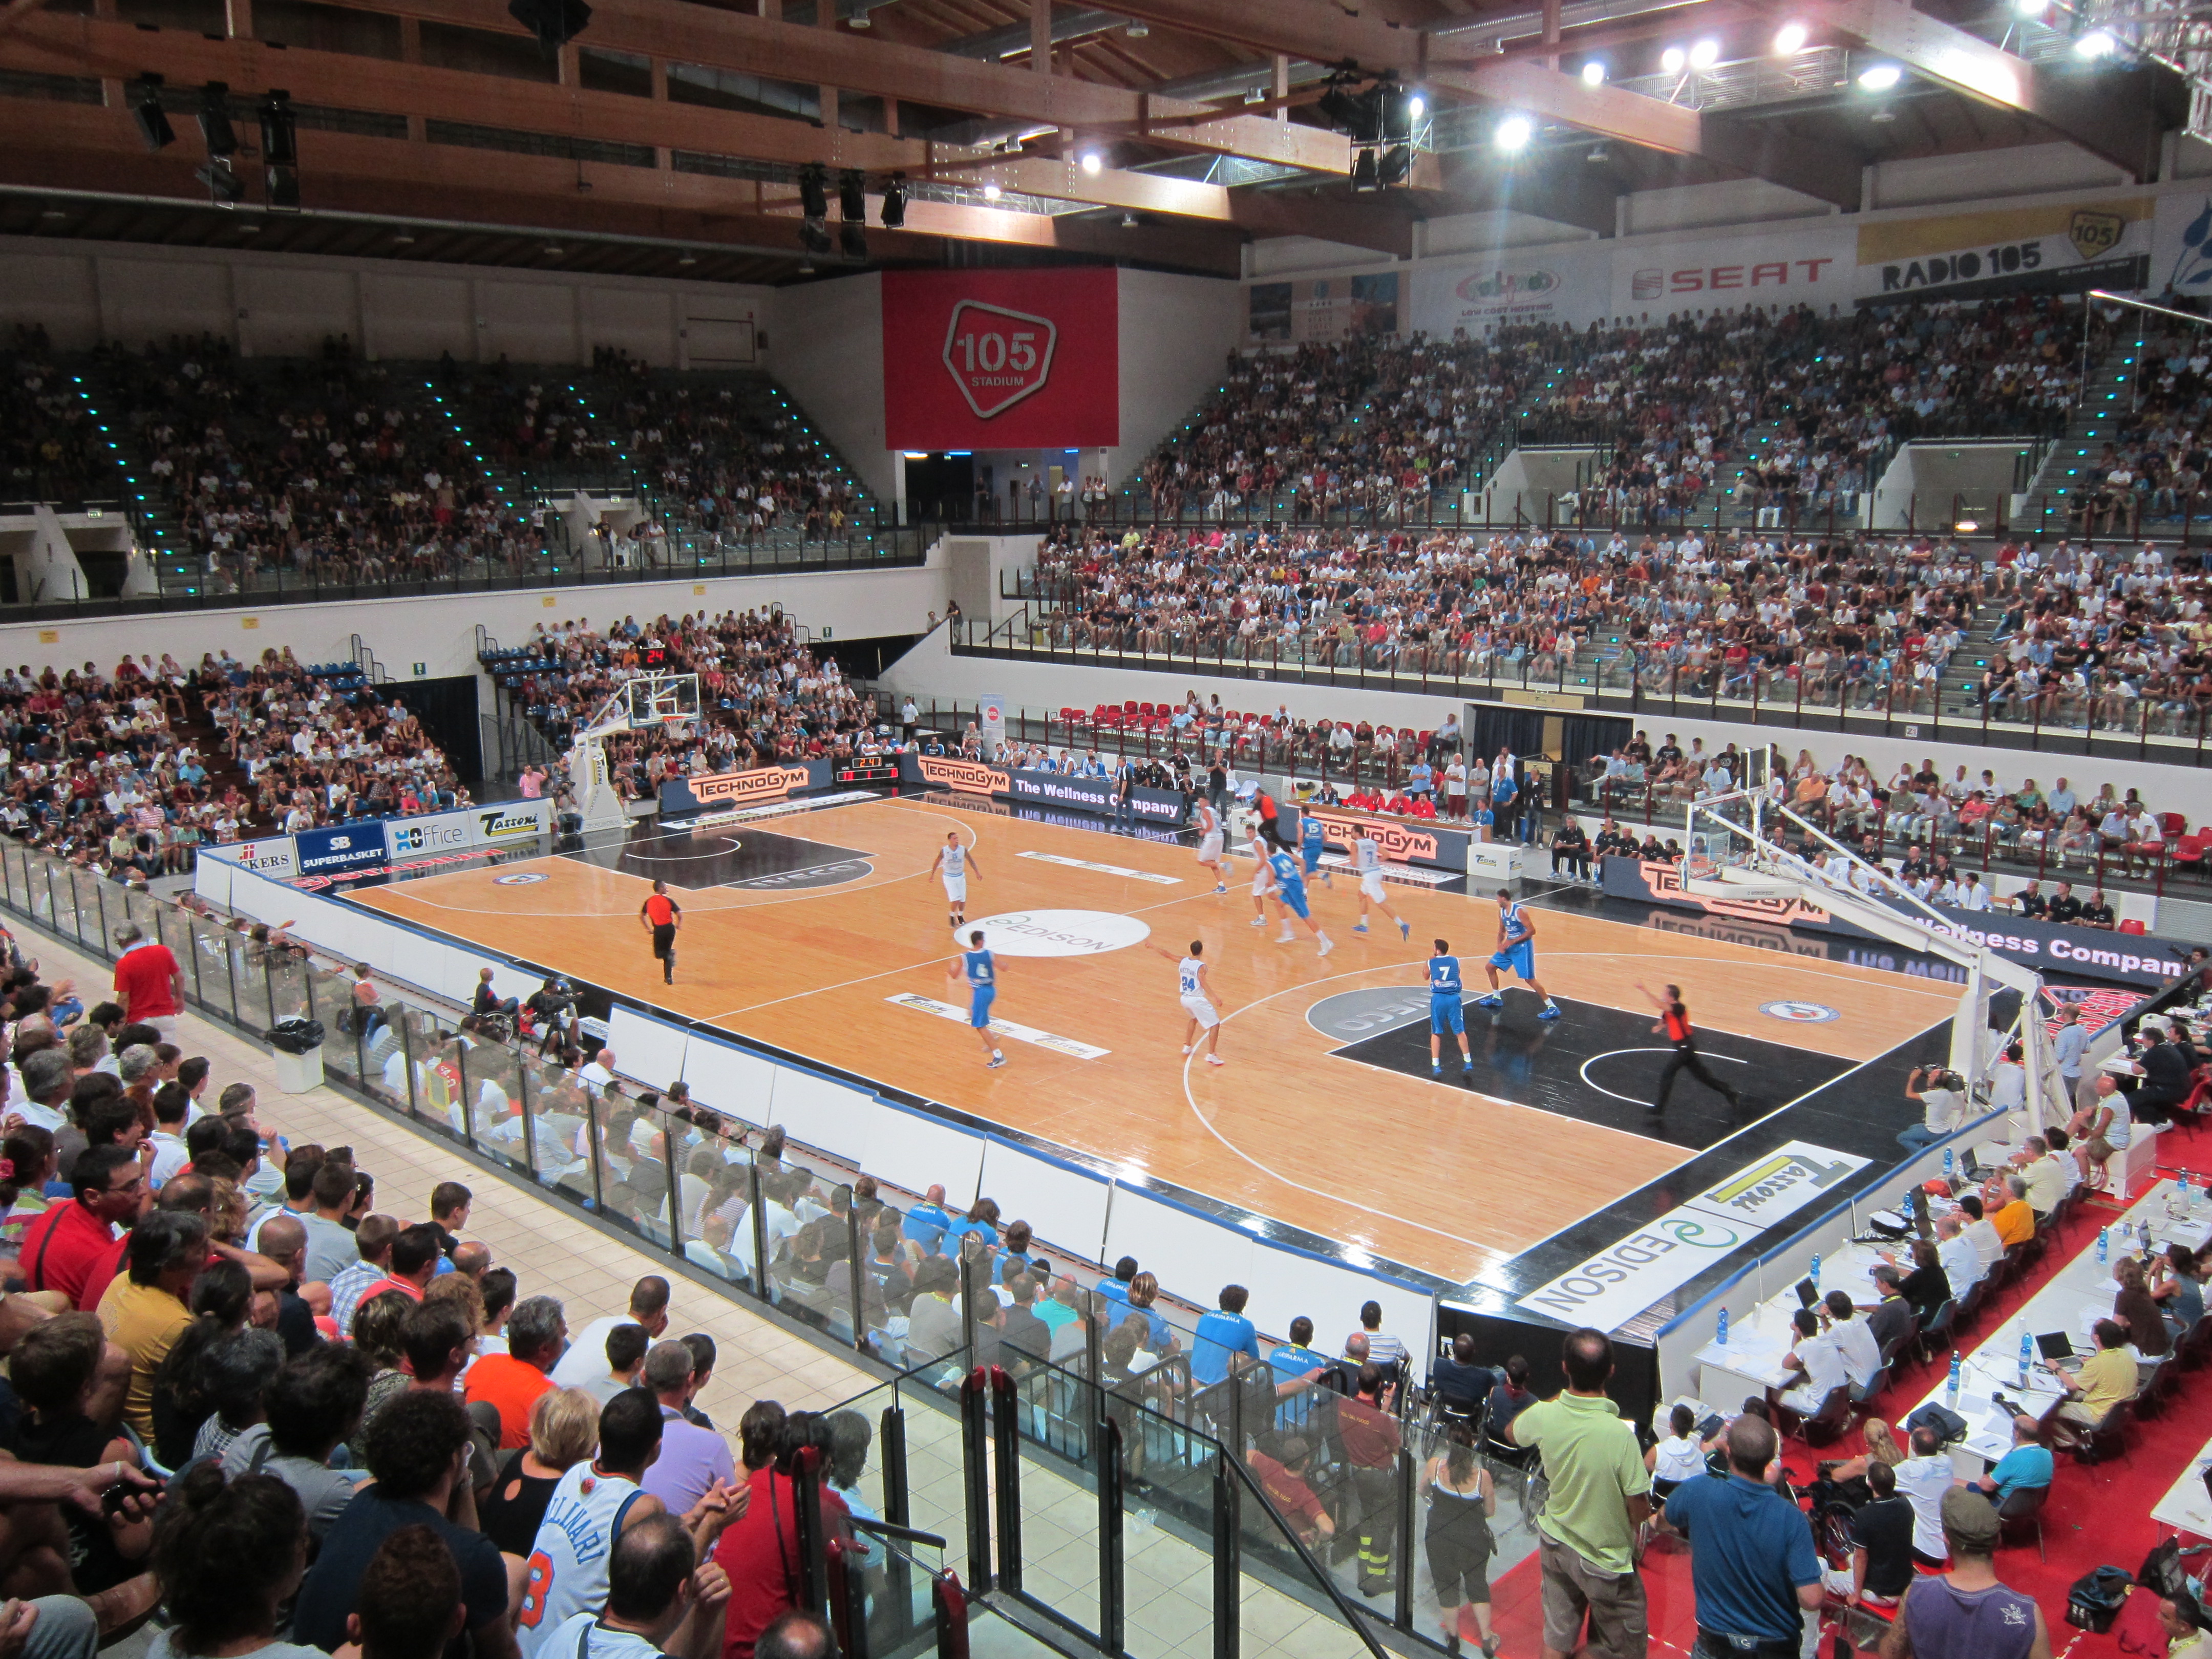  Volley Tim Cup, domenica al 105 Stadium di Rimini la finalissima del torneo Under 16